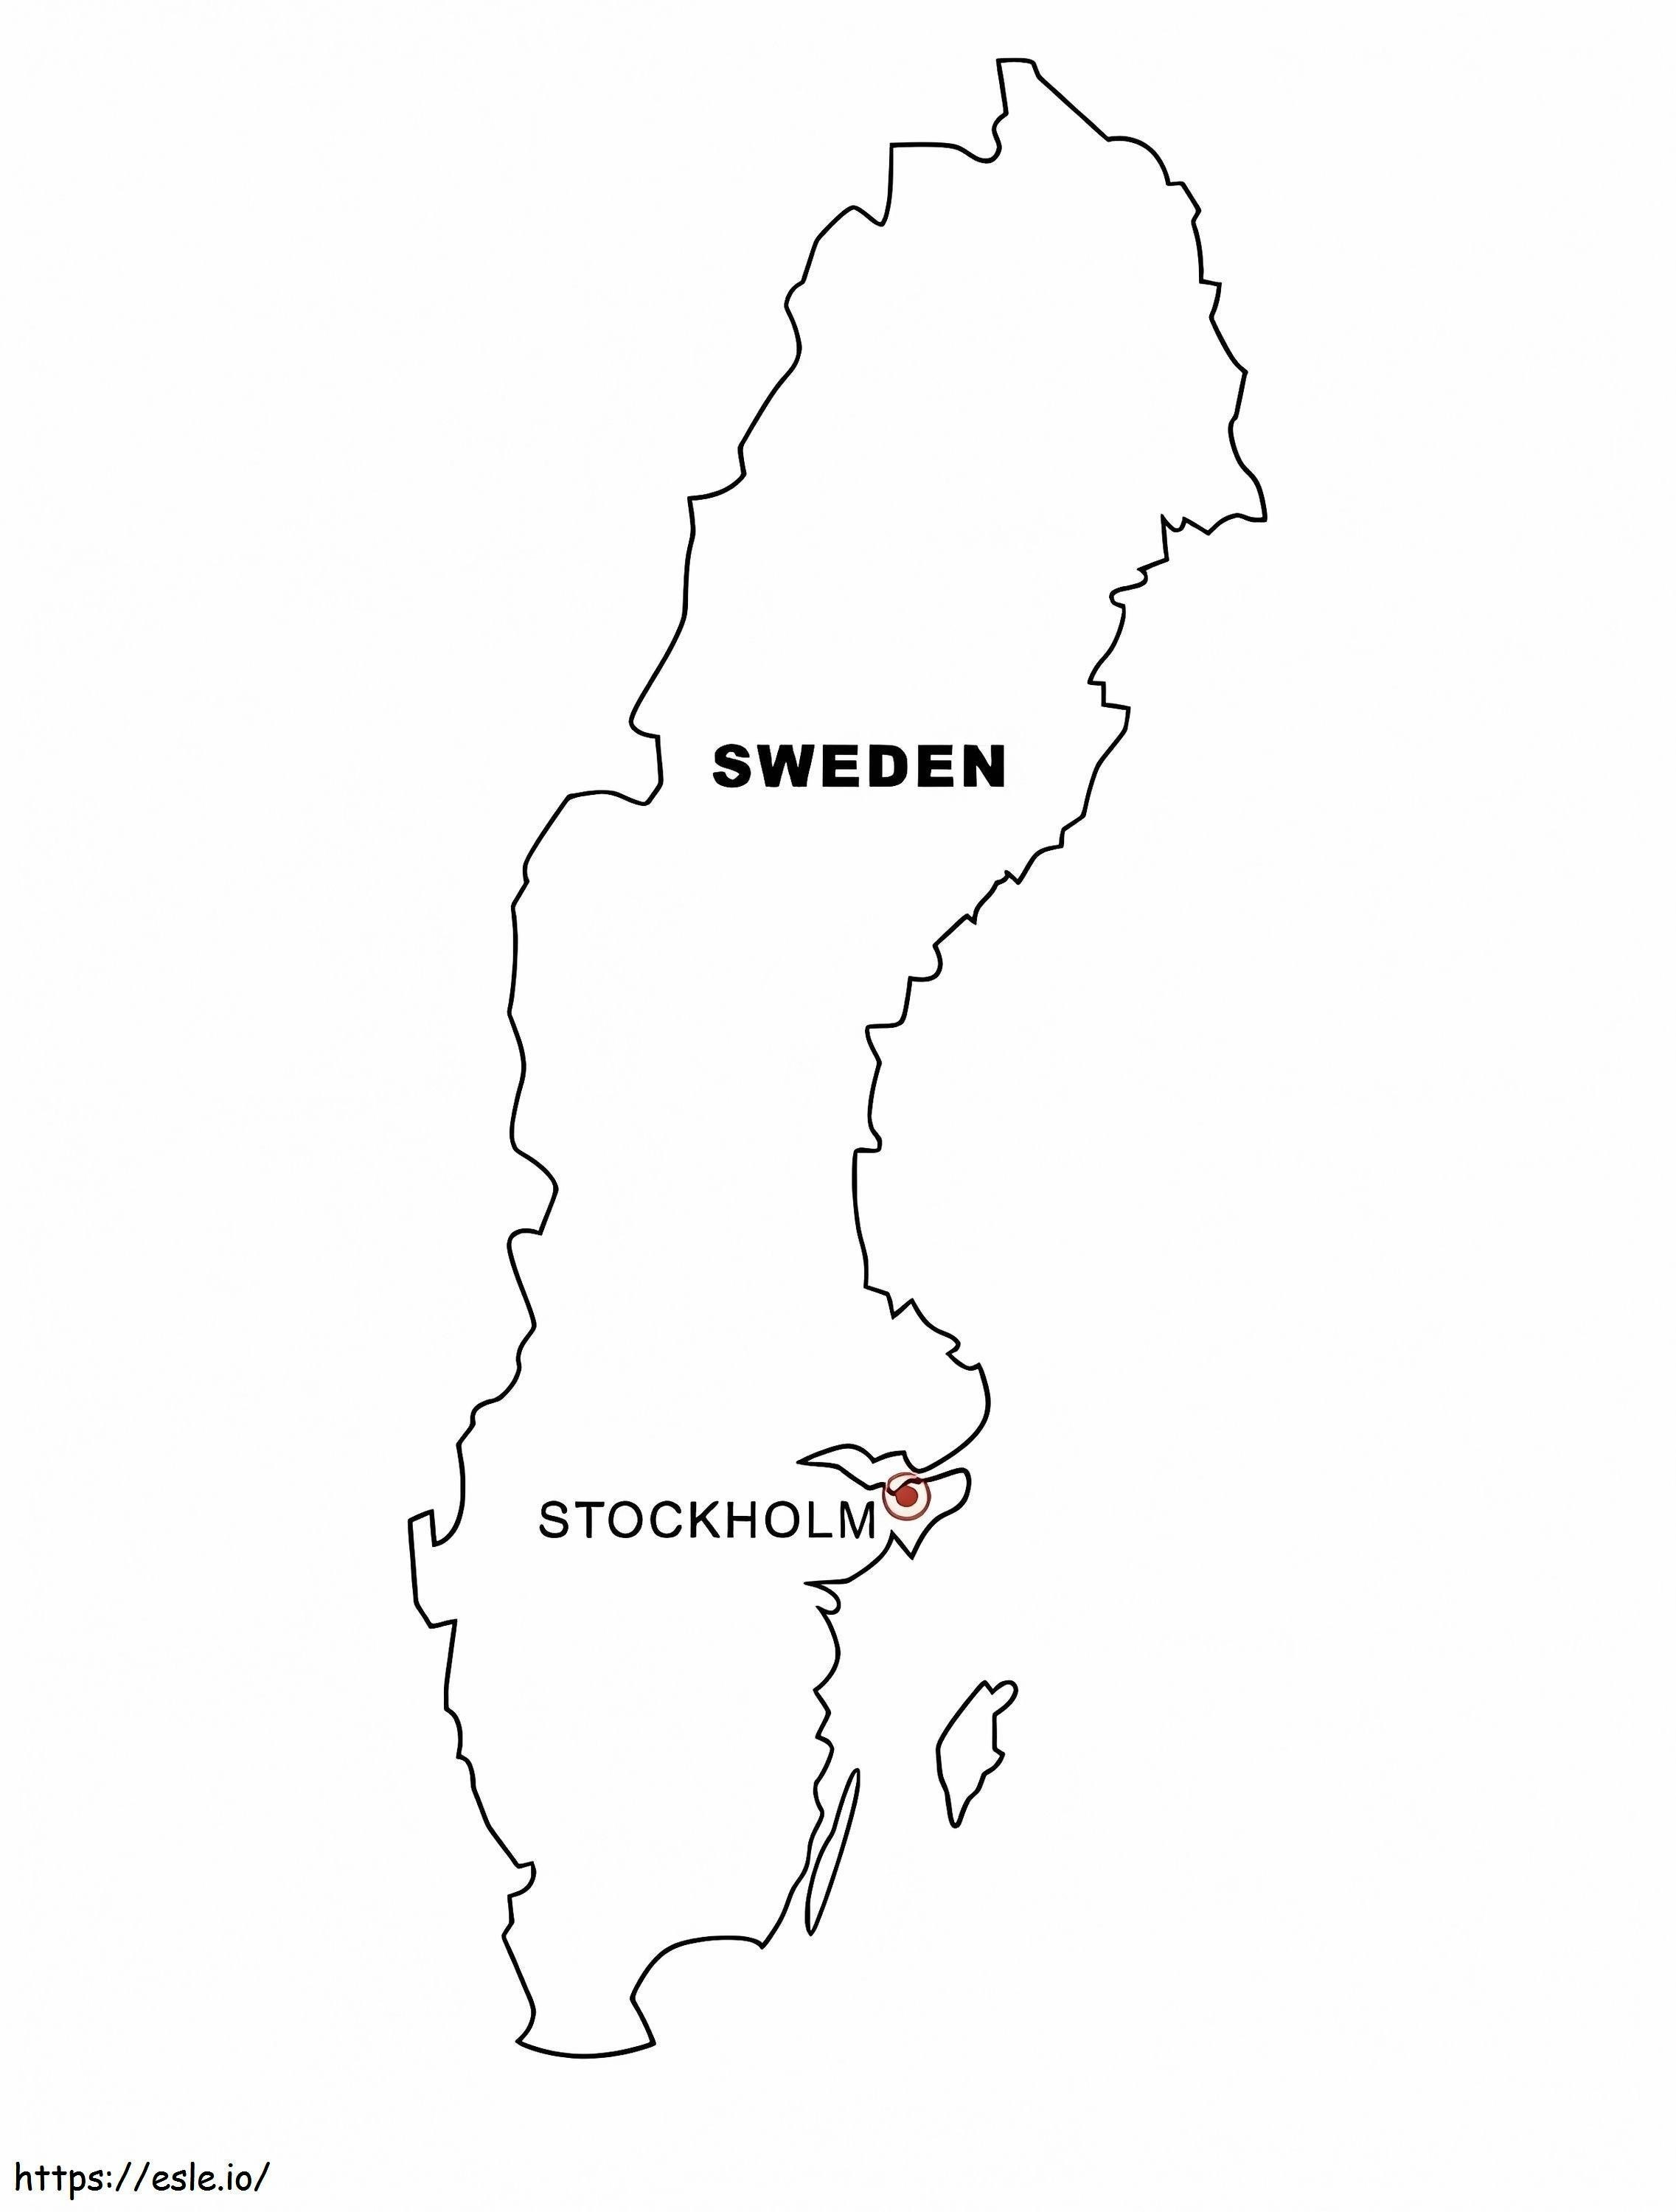 Mapa de Suecia para colorear